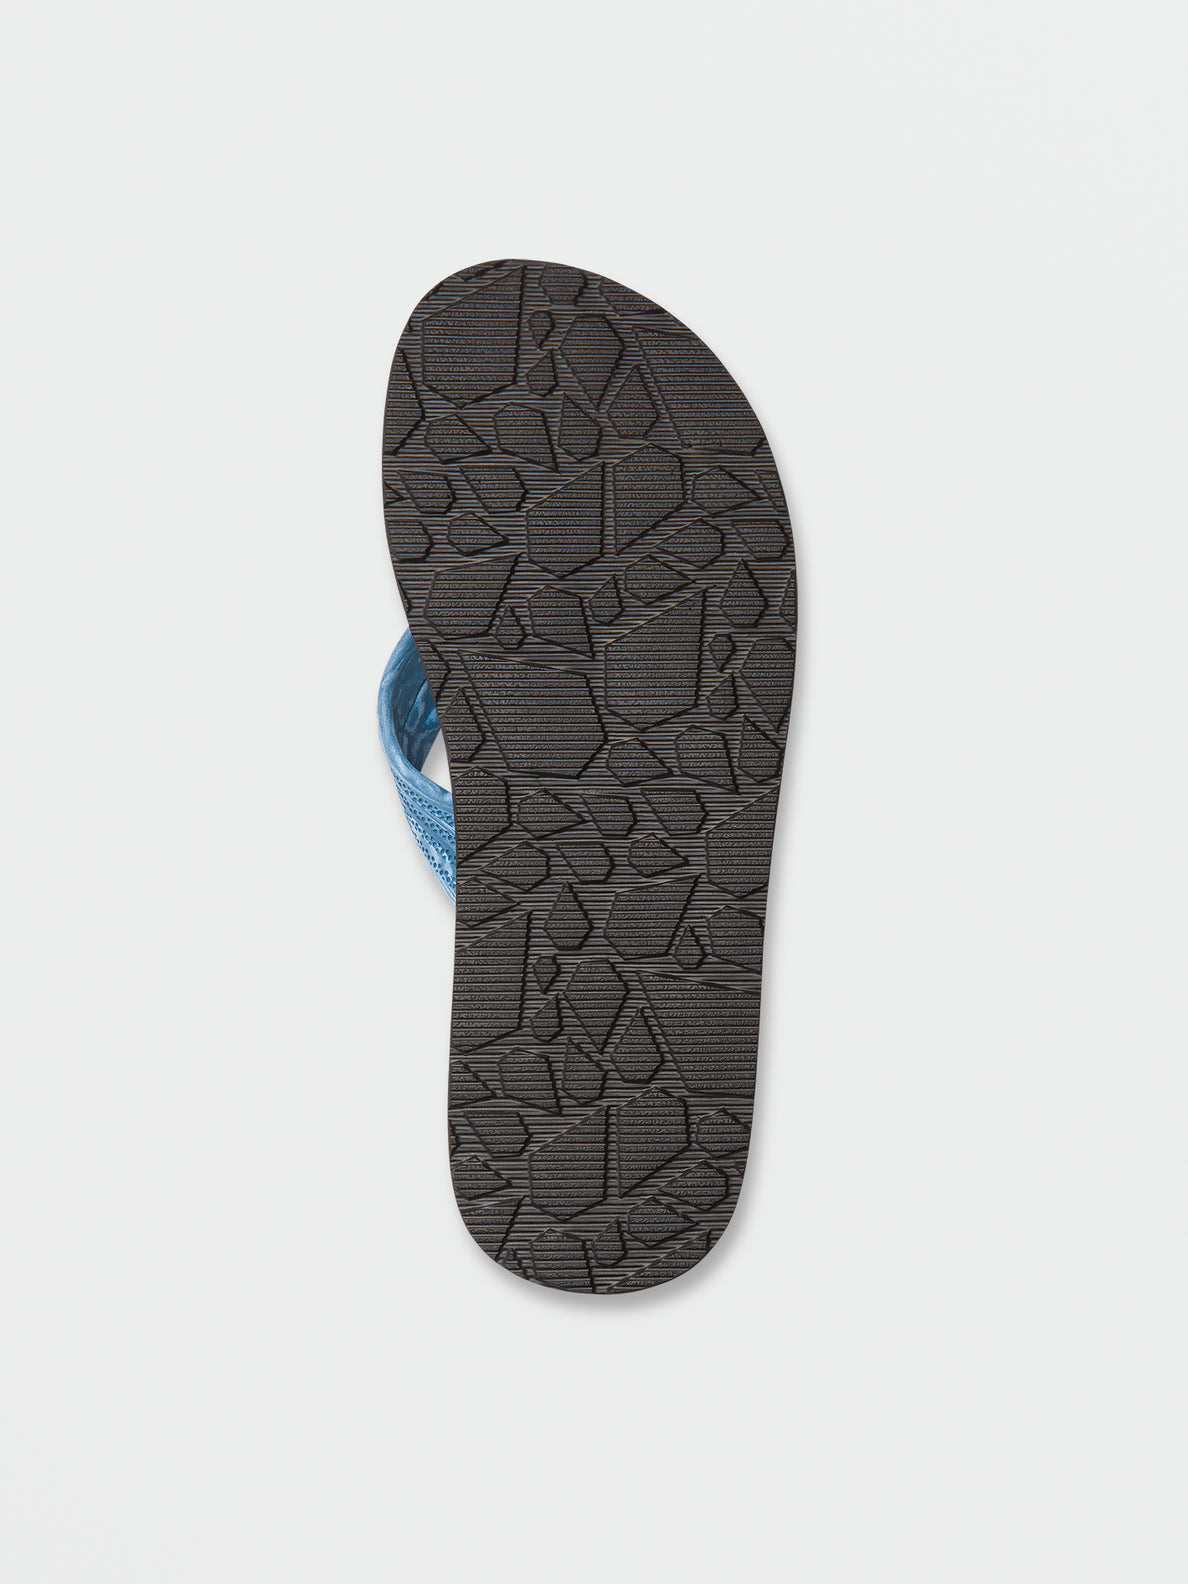 Daycation Sandals - Aged Indigo (V0812352_AIN) [B]